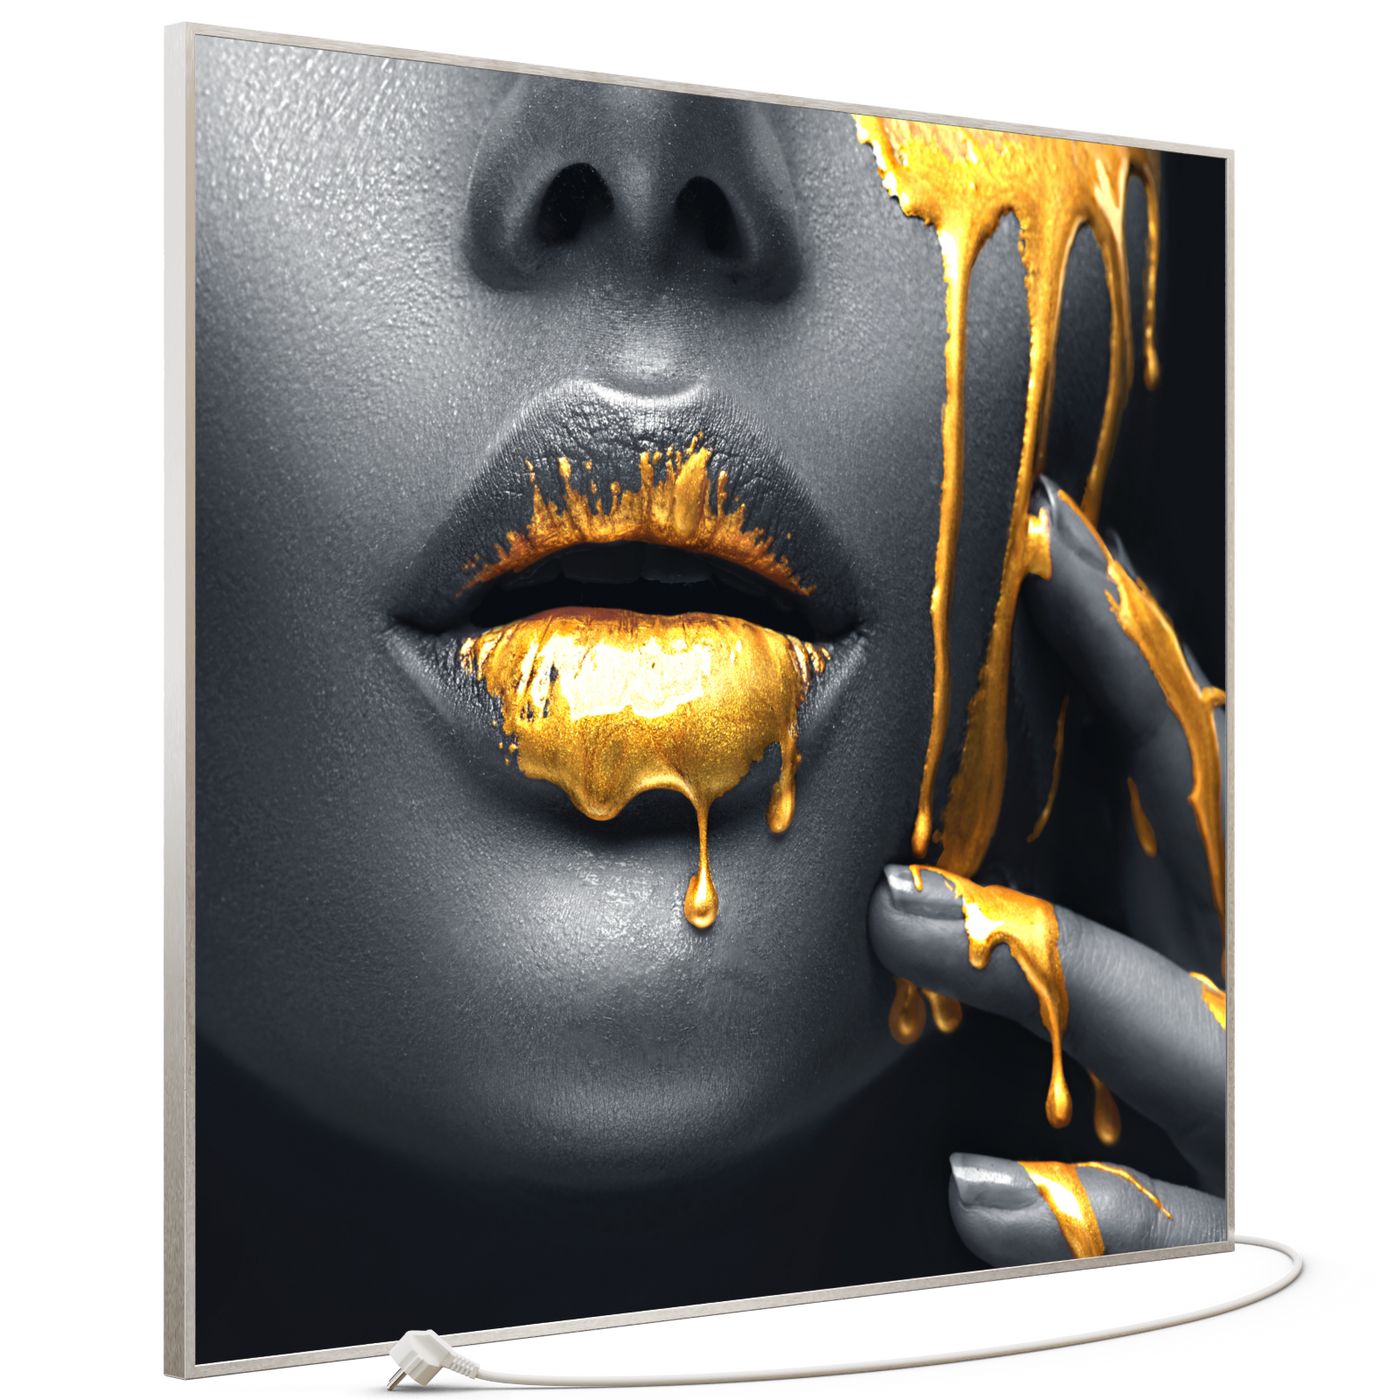 STEINFELD Bild Infrarotheizung 350-1200W Motiv 081 Goldene Lippen